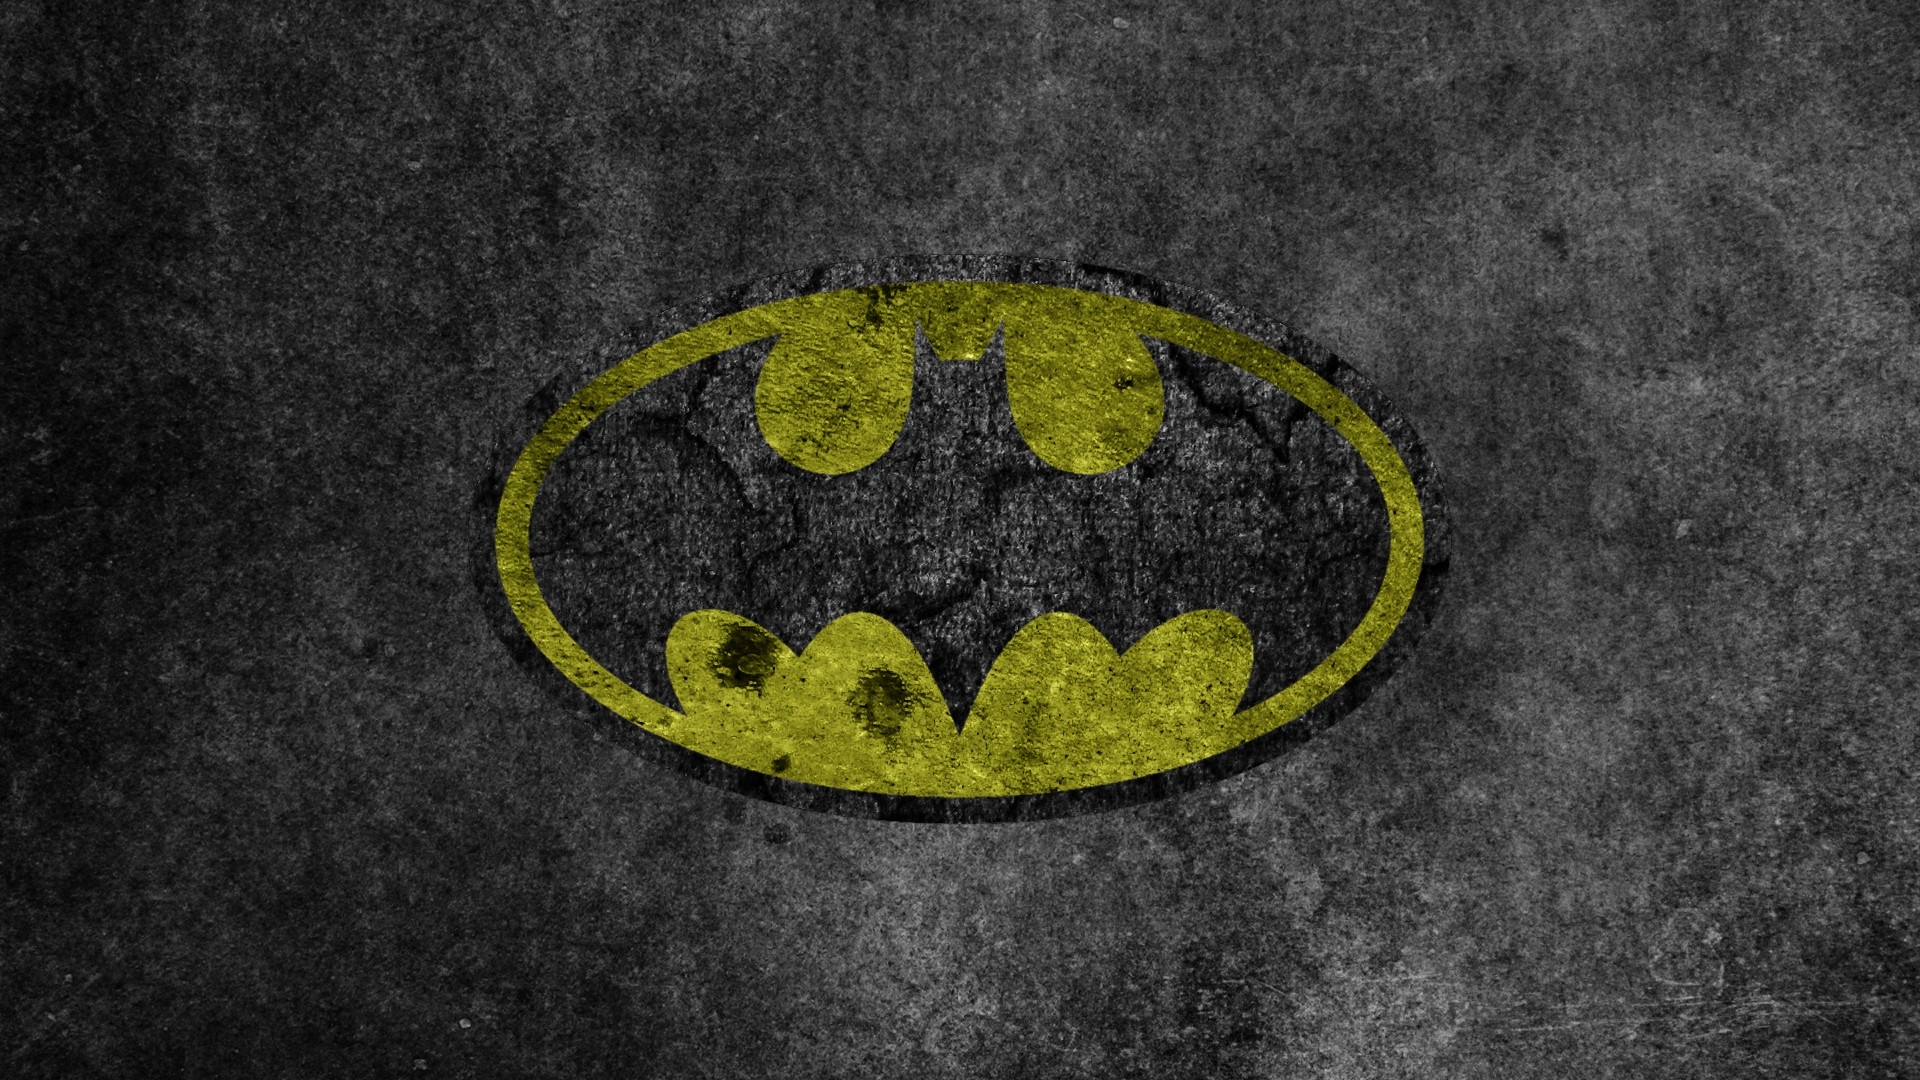 Batman Hd Wallpapers - WallpaperSafari